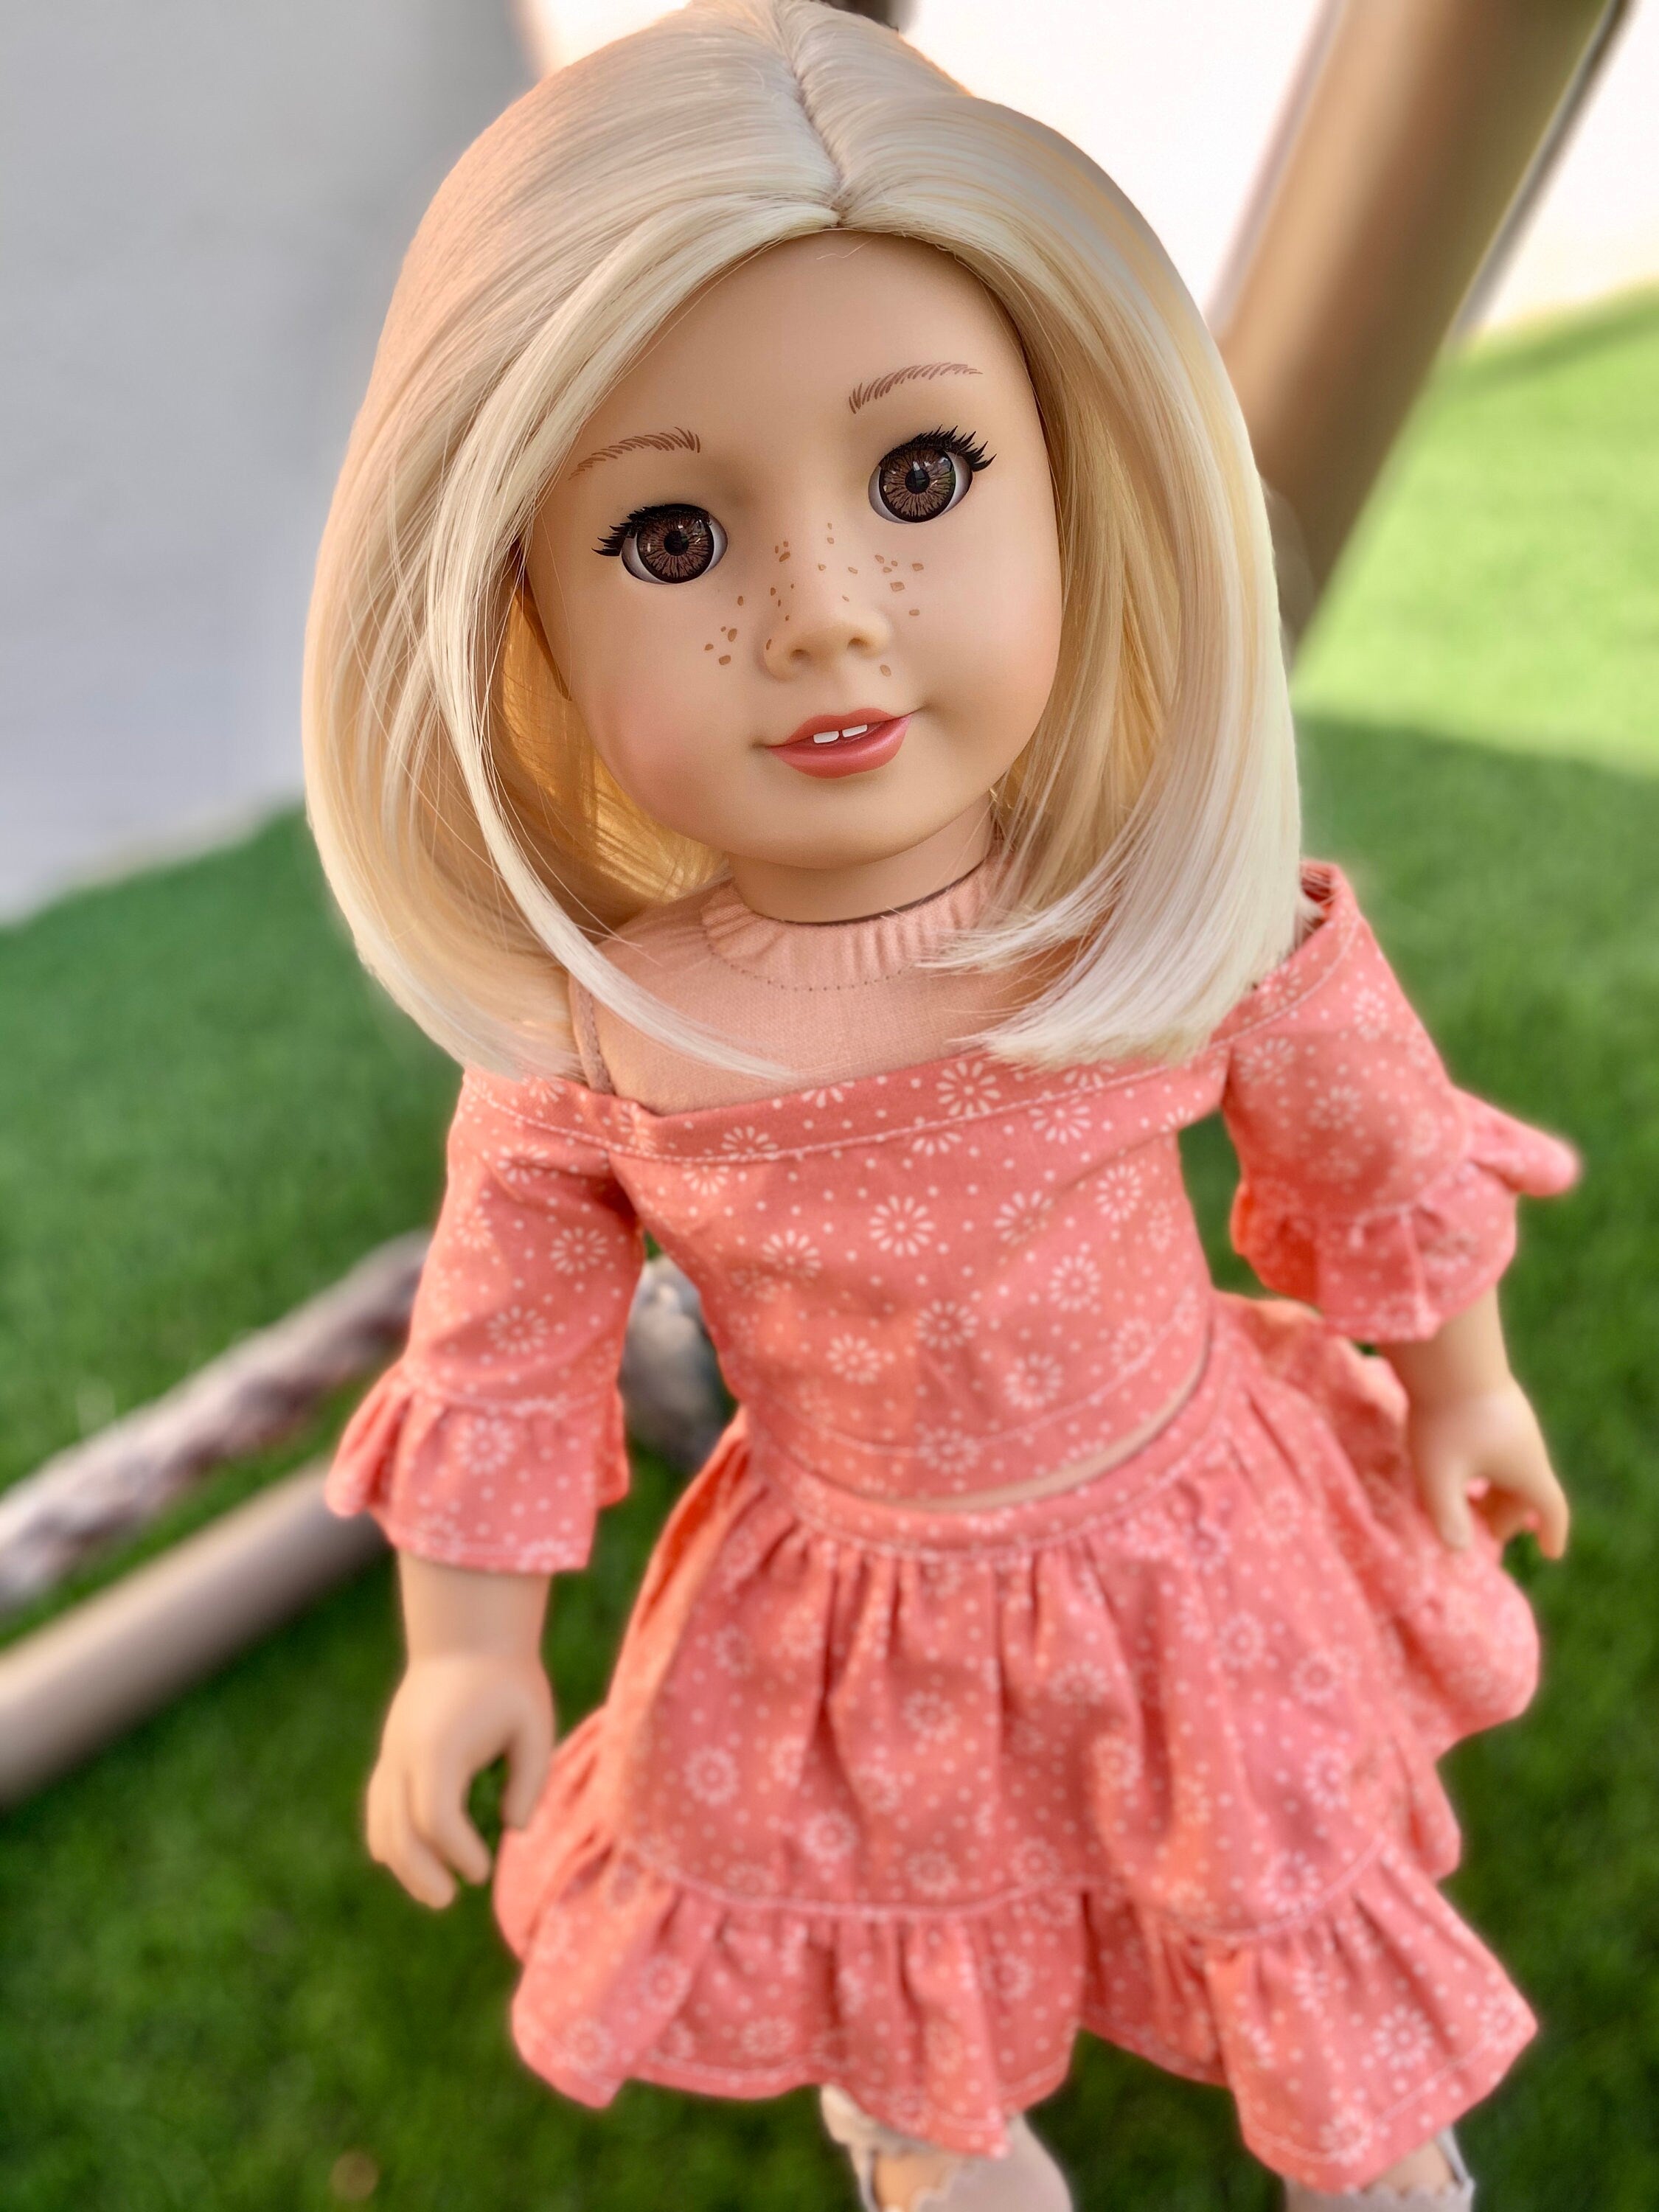 Custom doll wig for 18" American Girl Dolls - Heat Safe - Tangle Resistant -fits 10-11" head size of 18" dolls OG Blythe BJD Gotz Blonde Bob